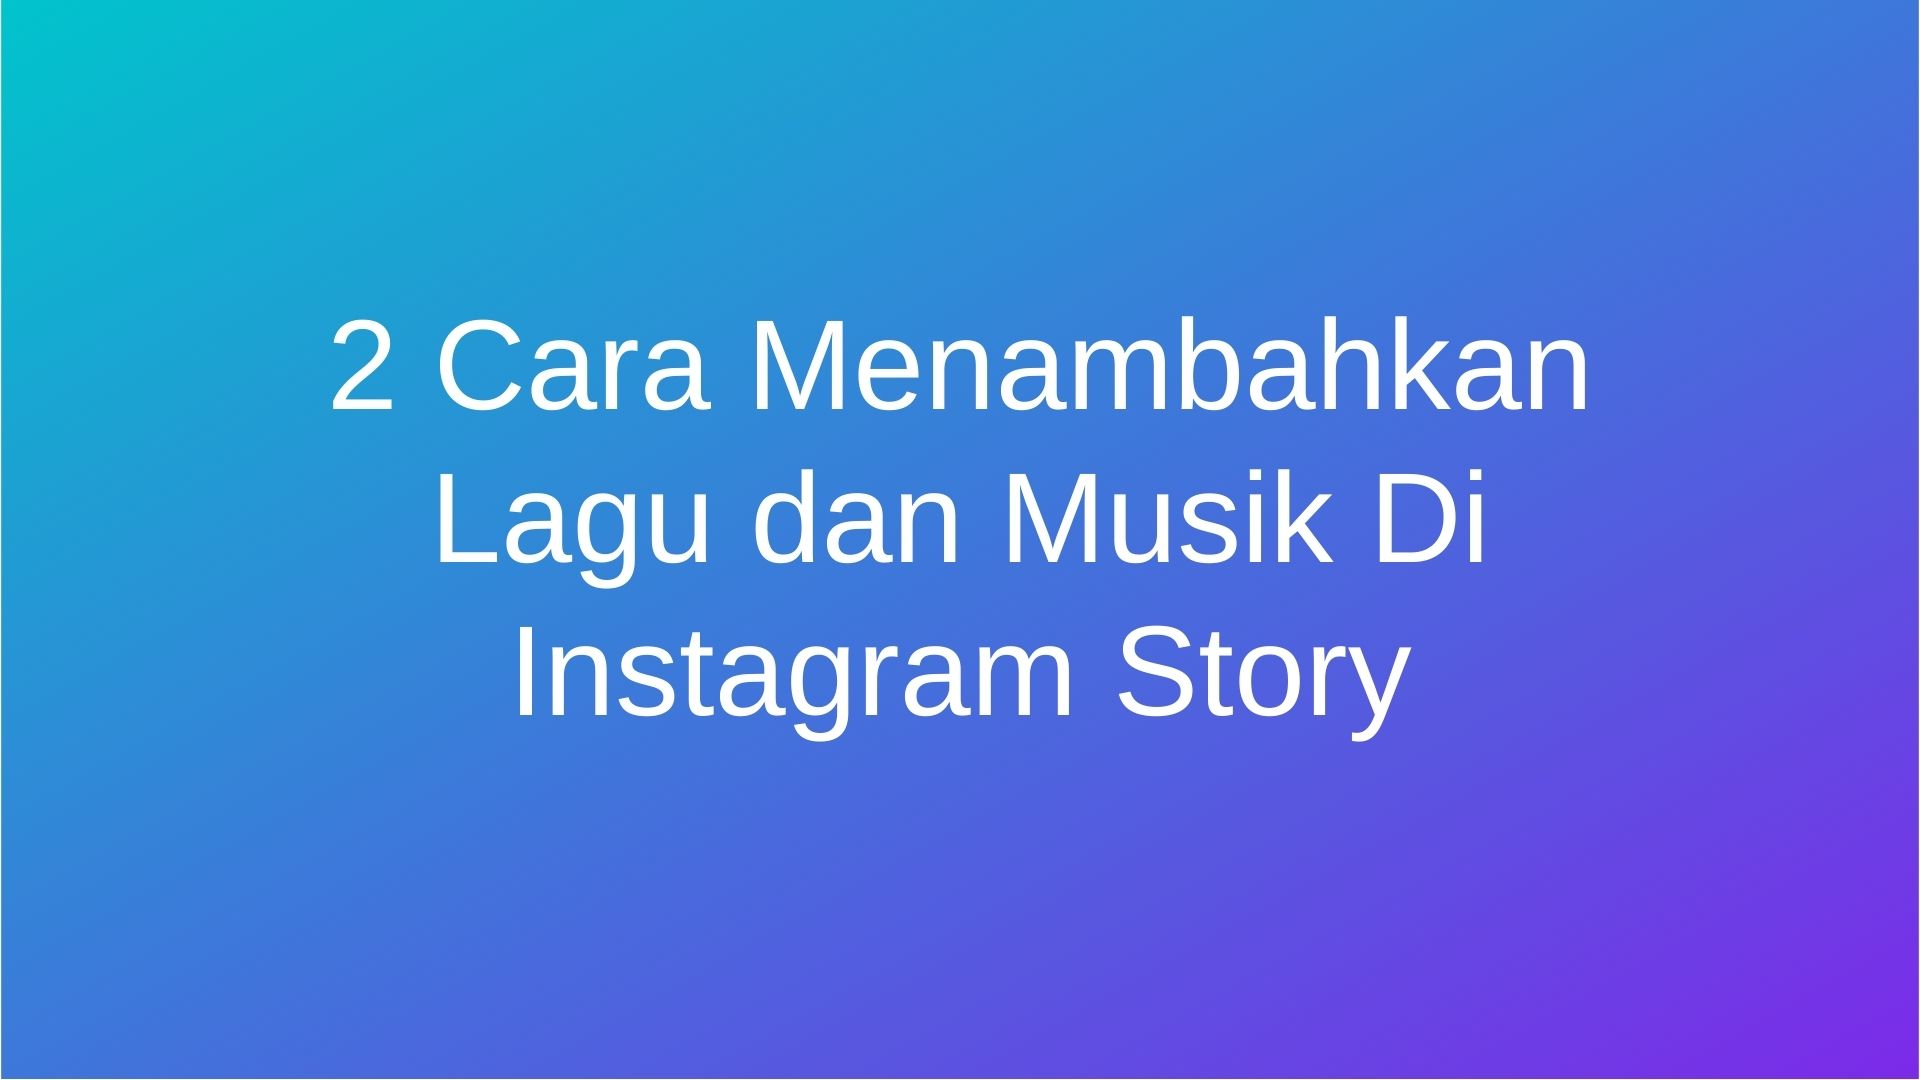 Cara Menambahkan Lagu dan Musik Di Instagram Story